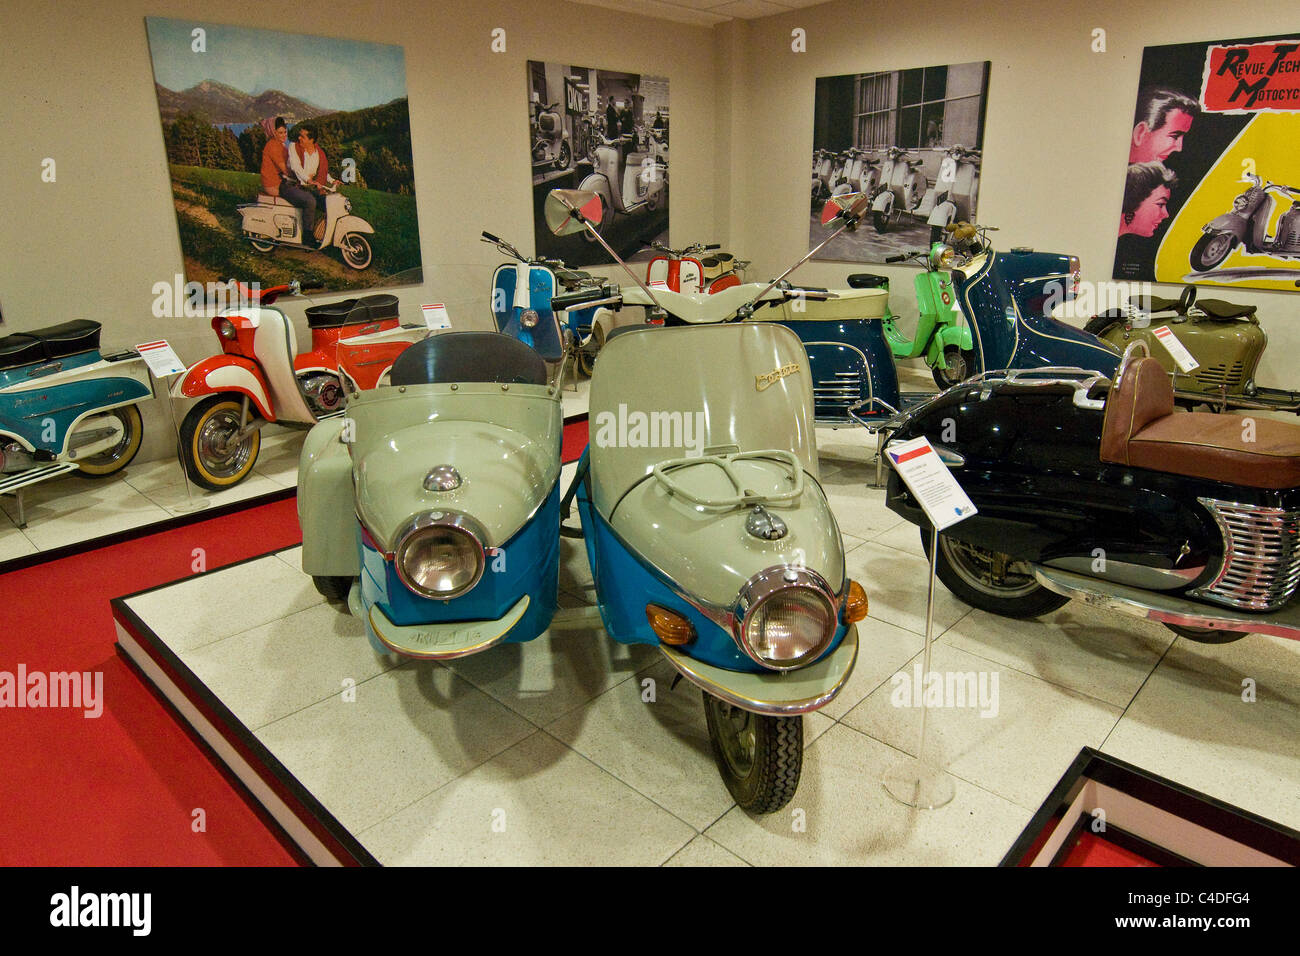 Scooter & Lambretta museum, Rodano, provincia di Milano, Italia Foto stock  - Alamy